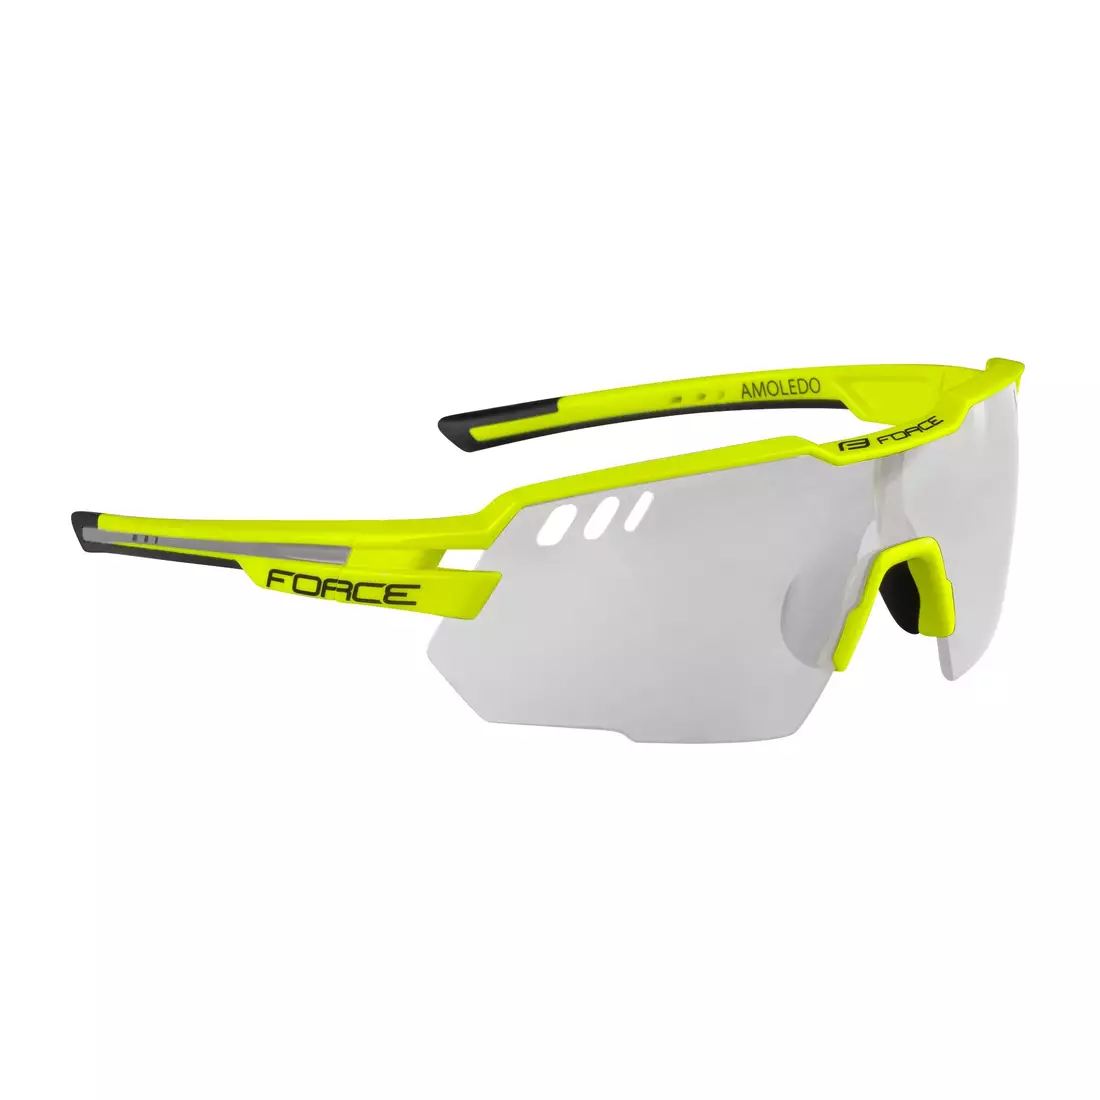 FORCE AMOLEDO Cyklistické / sportovní fotochromatické brýle fluor yellow 910852